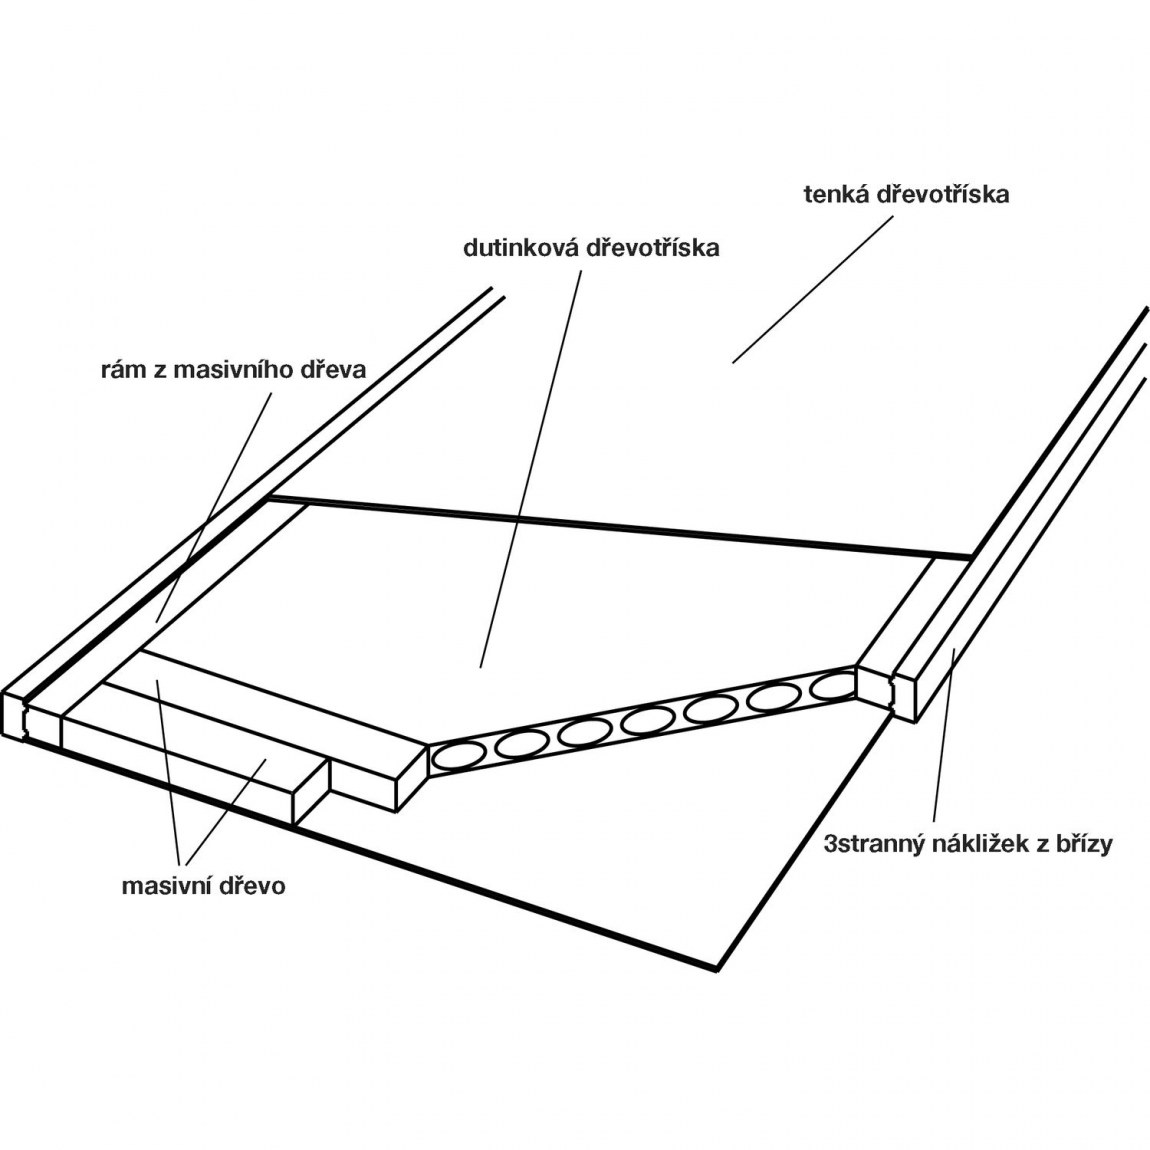 Dveřní polotovar Optimal RS, nákližek bříza - šířka 650 mm výška 2030 mm - Dílna - Outdoor Stavební potřeby